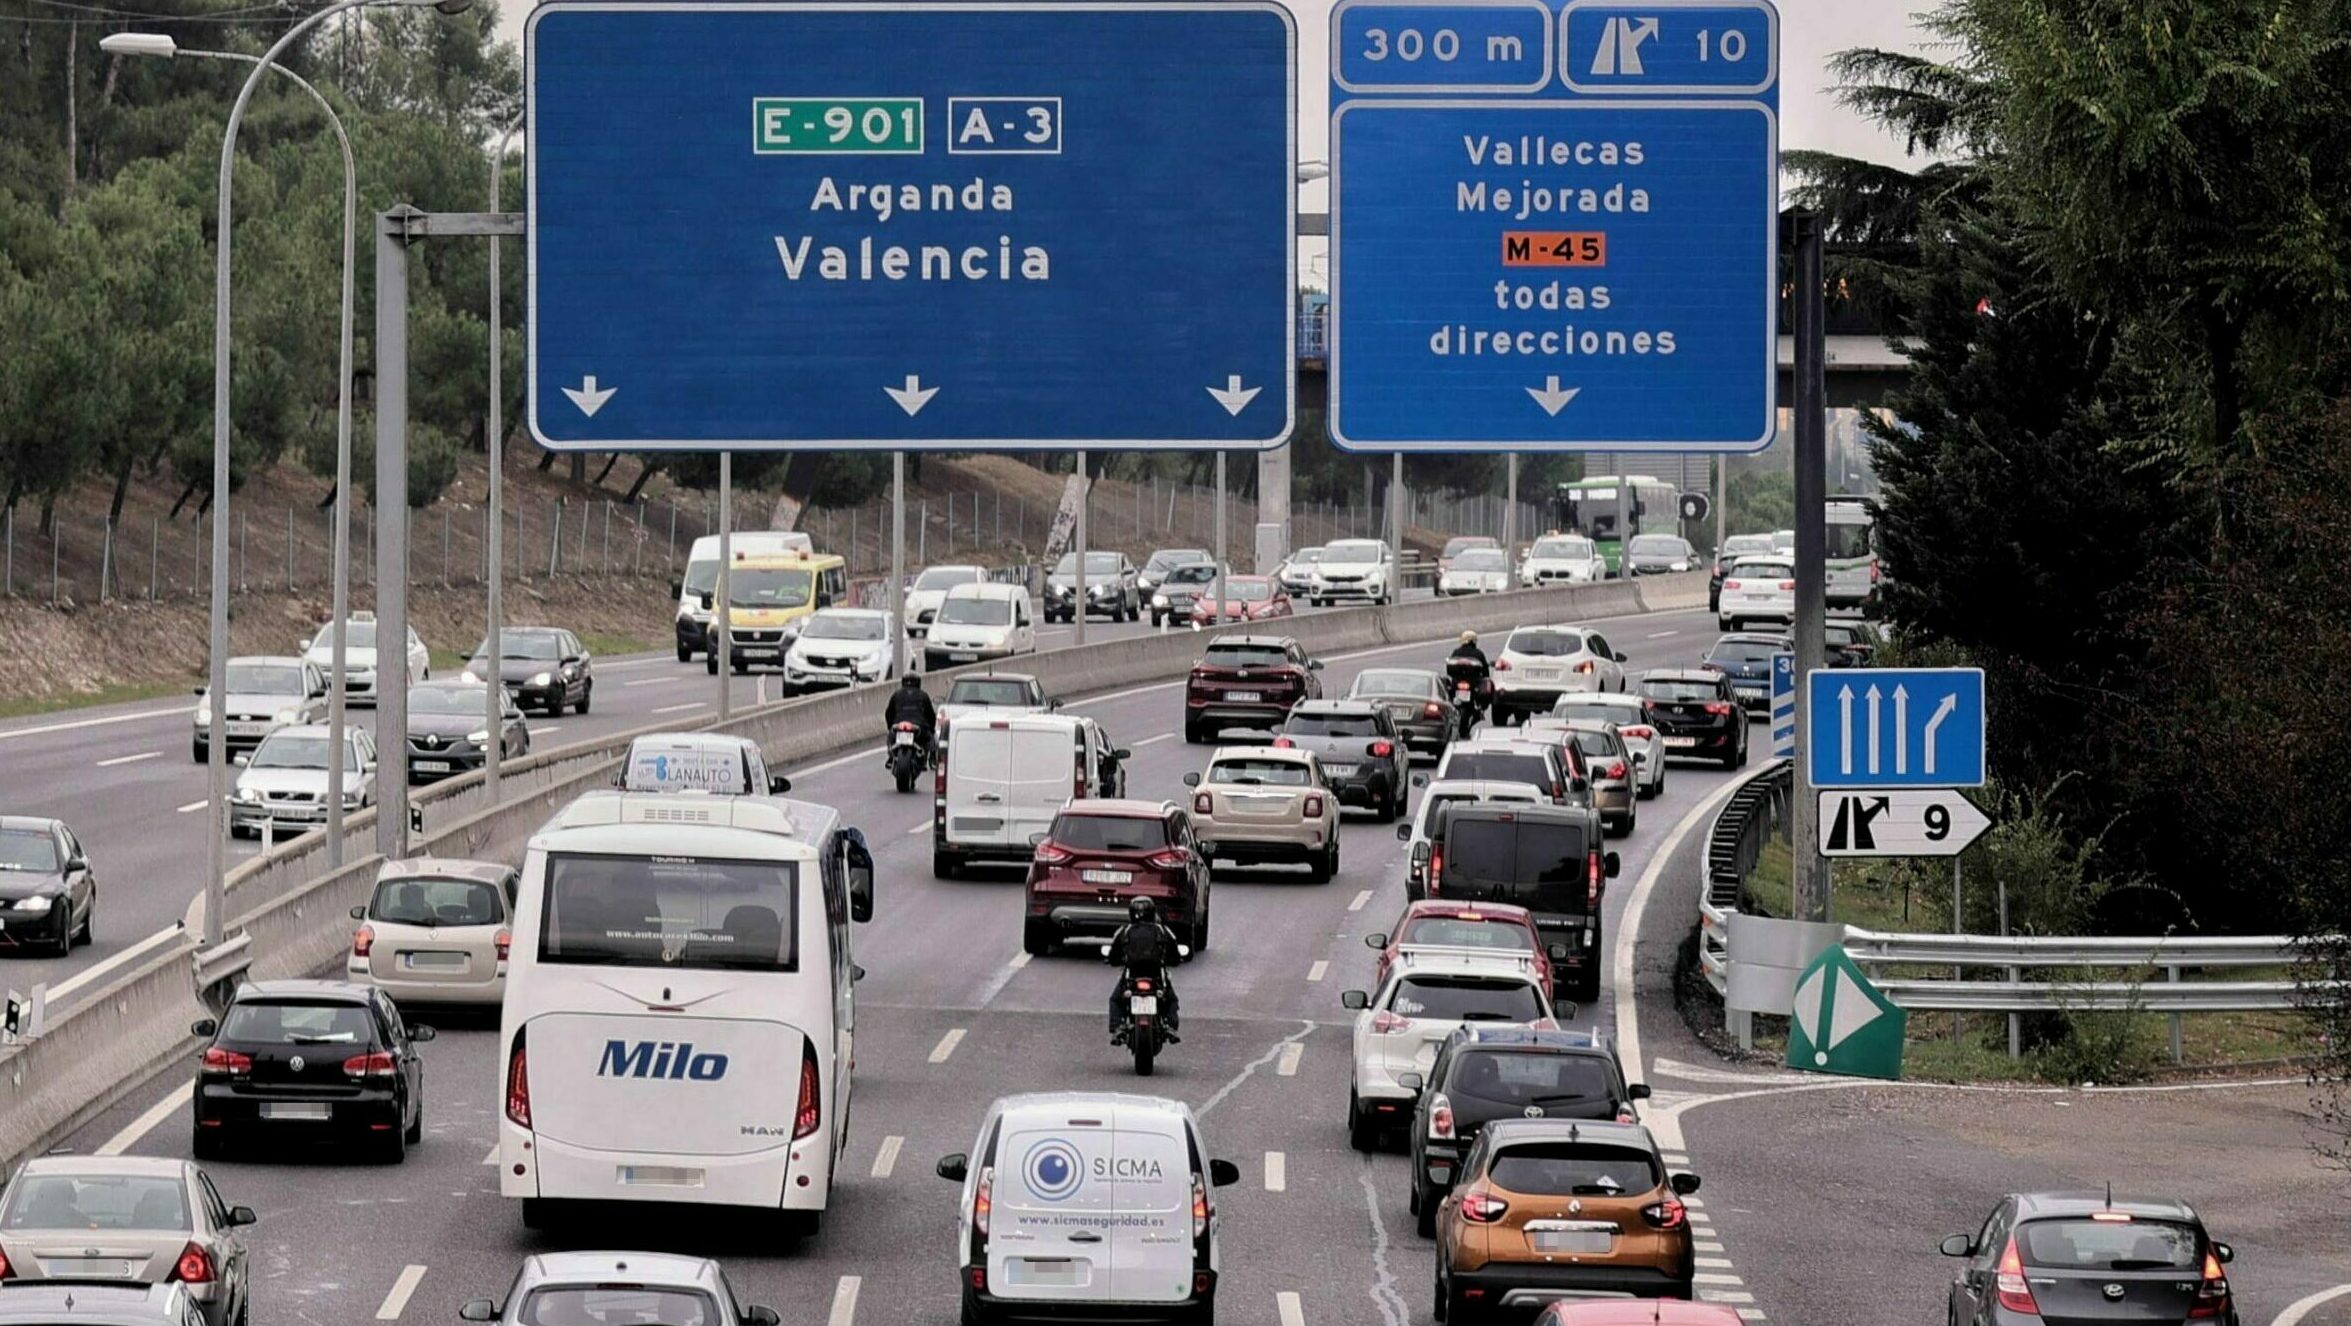 El tráfico en el puente de diciembre: las carreteras de Madrid comienzan a atascarse